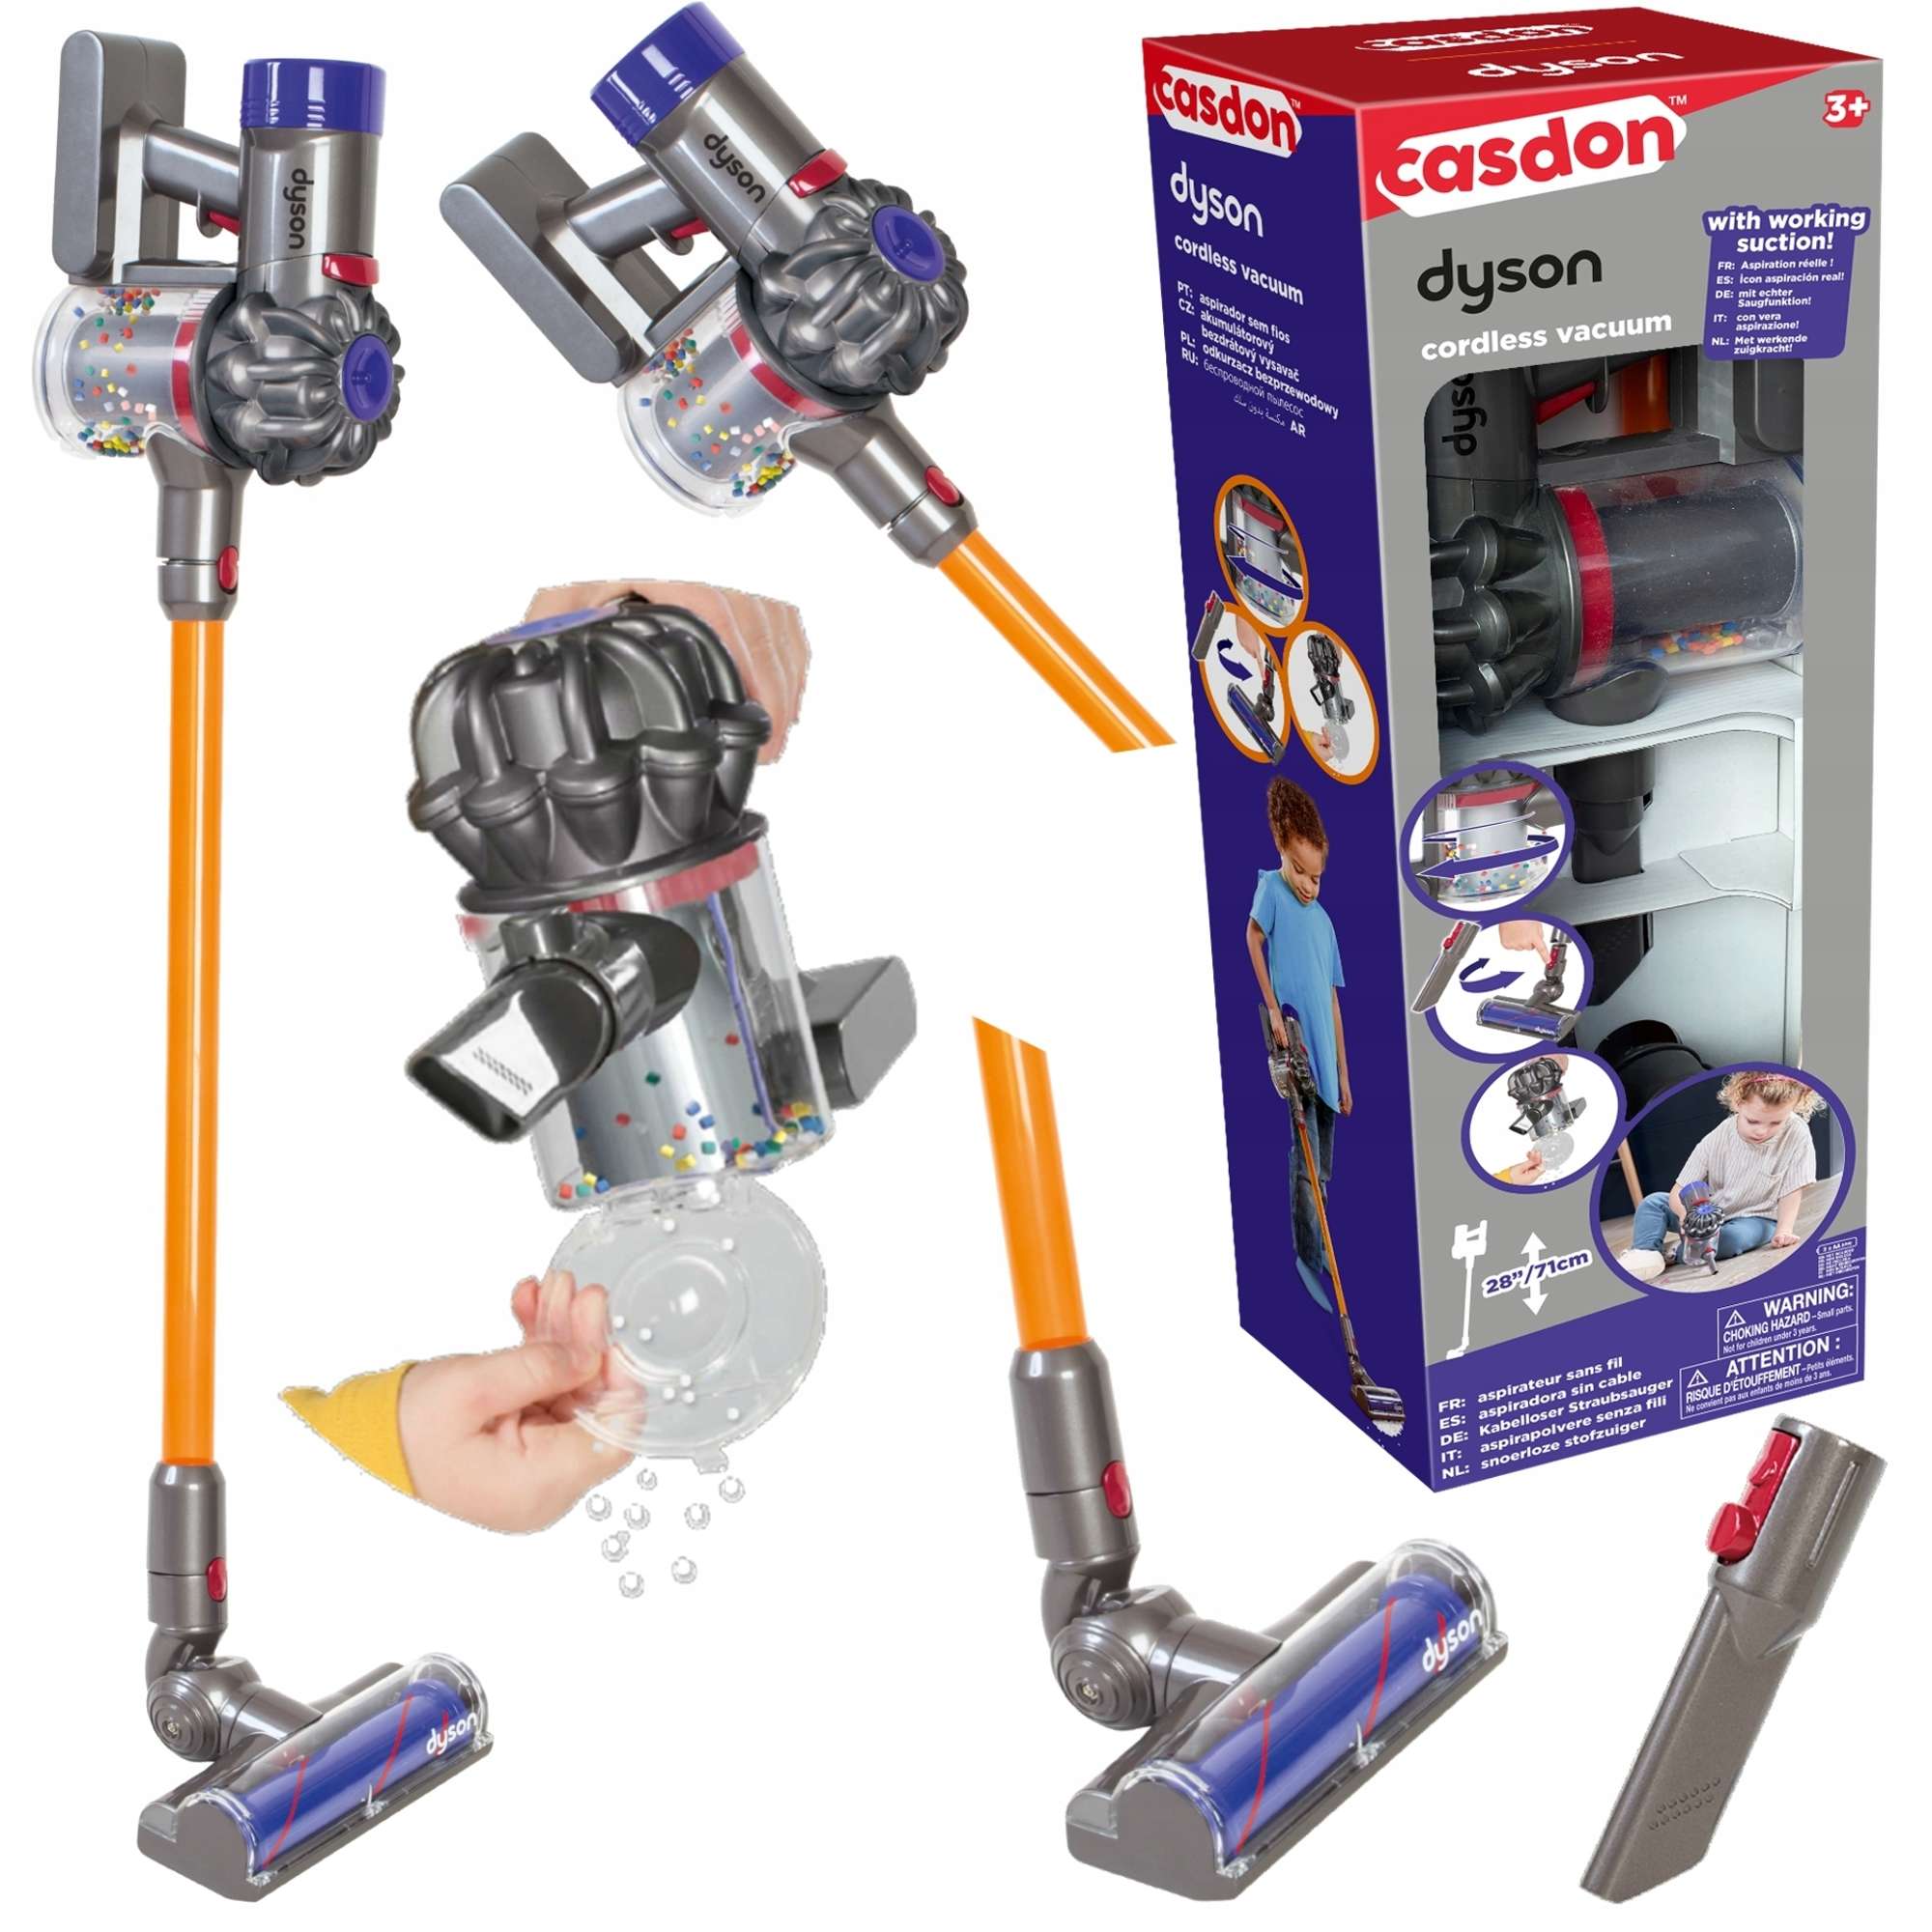 Casdon Dyson interaktive Vakuum Spielzeug Upright Kinder Staubsaug für Cordless